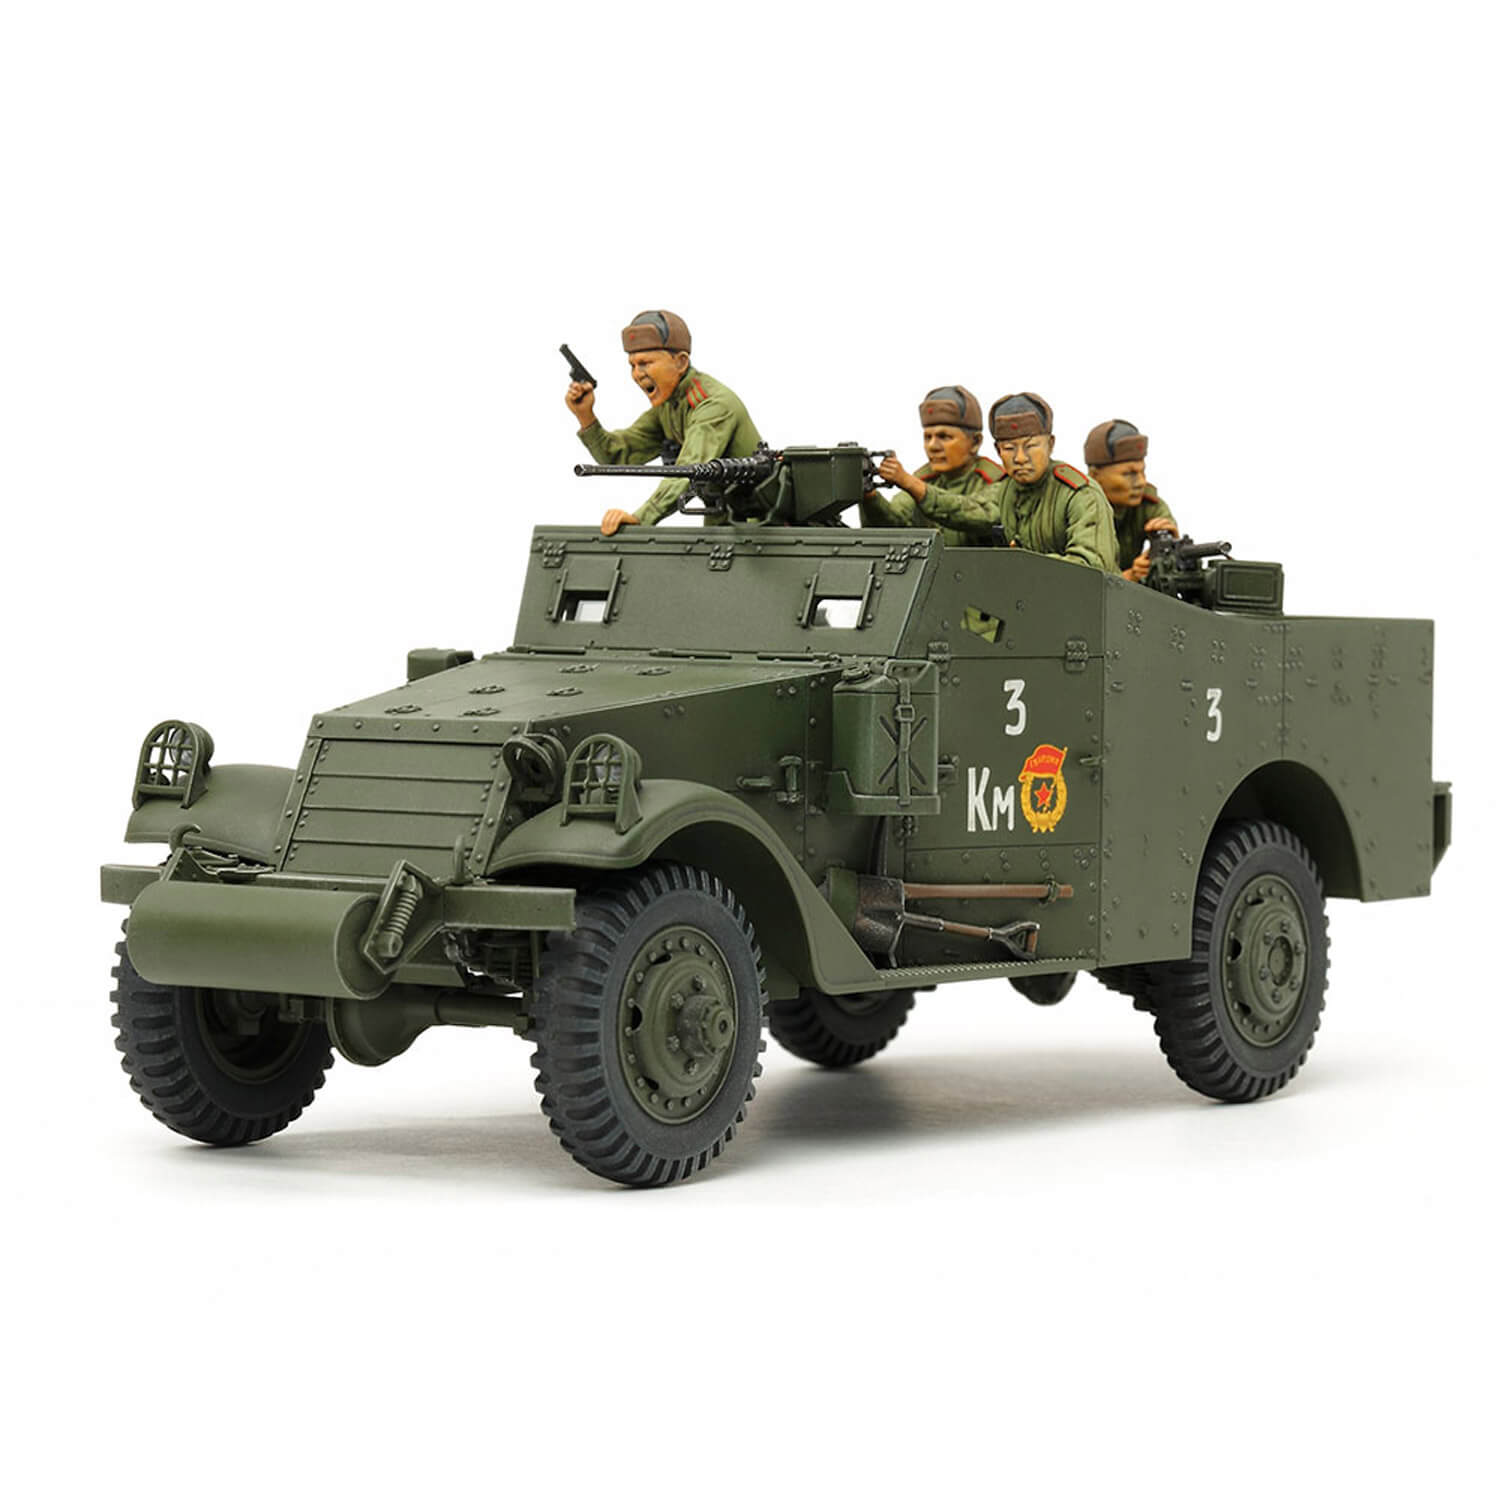 300 pieces Jouet militaire soldat chars armes plastique - Jeux éducatifs